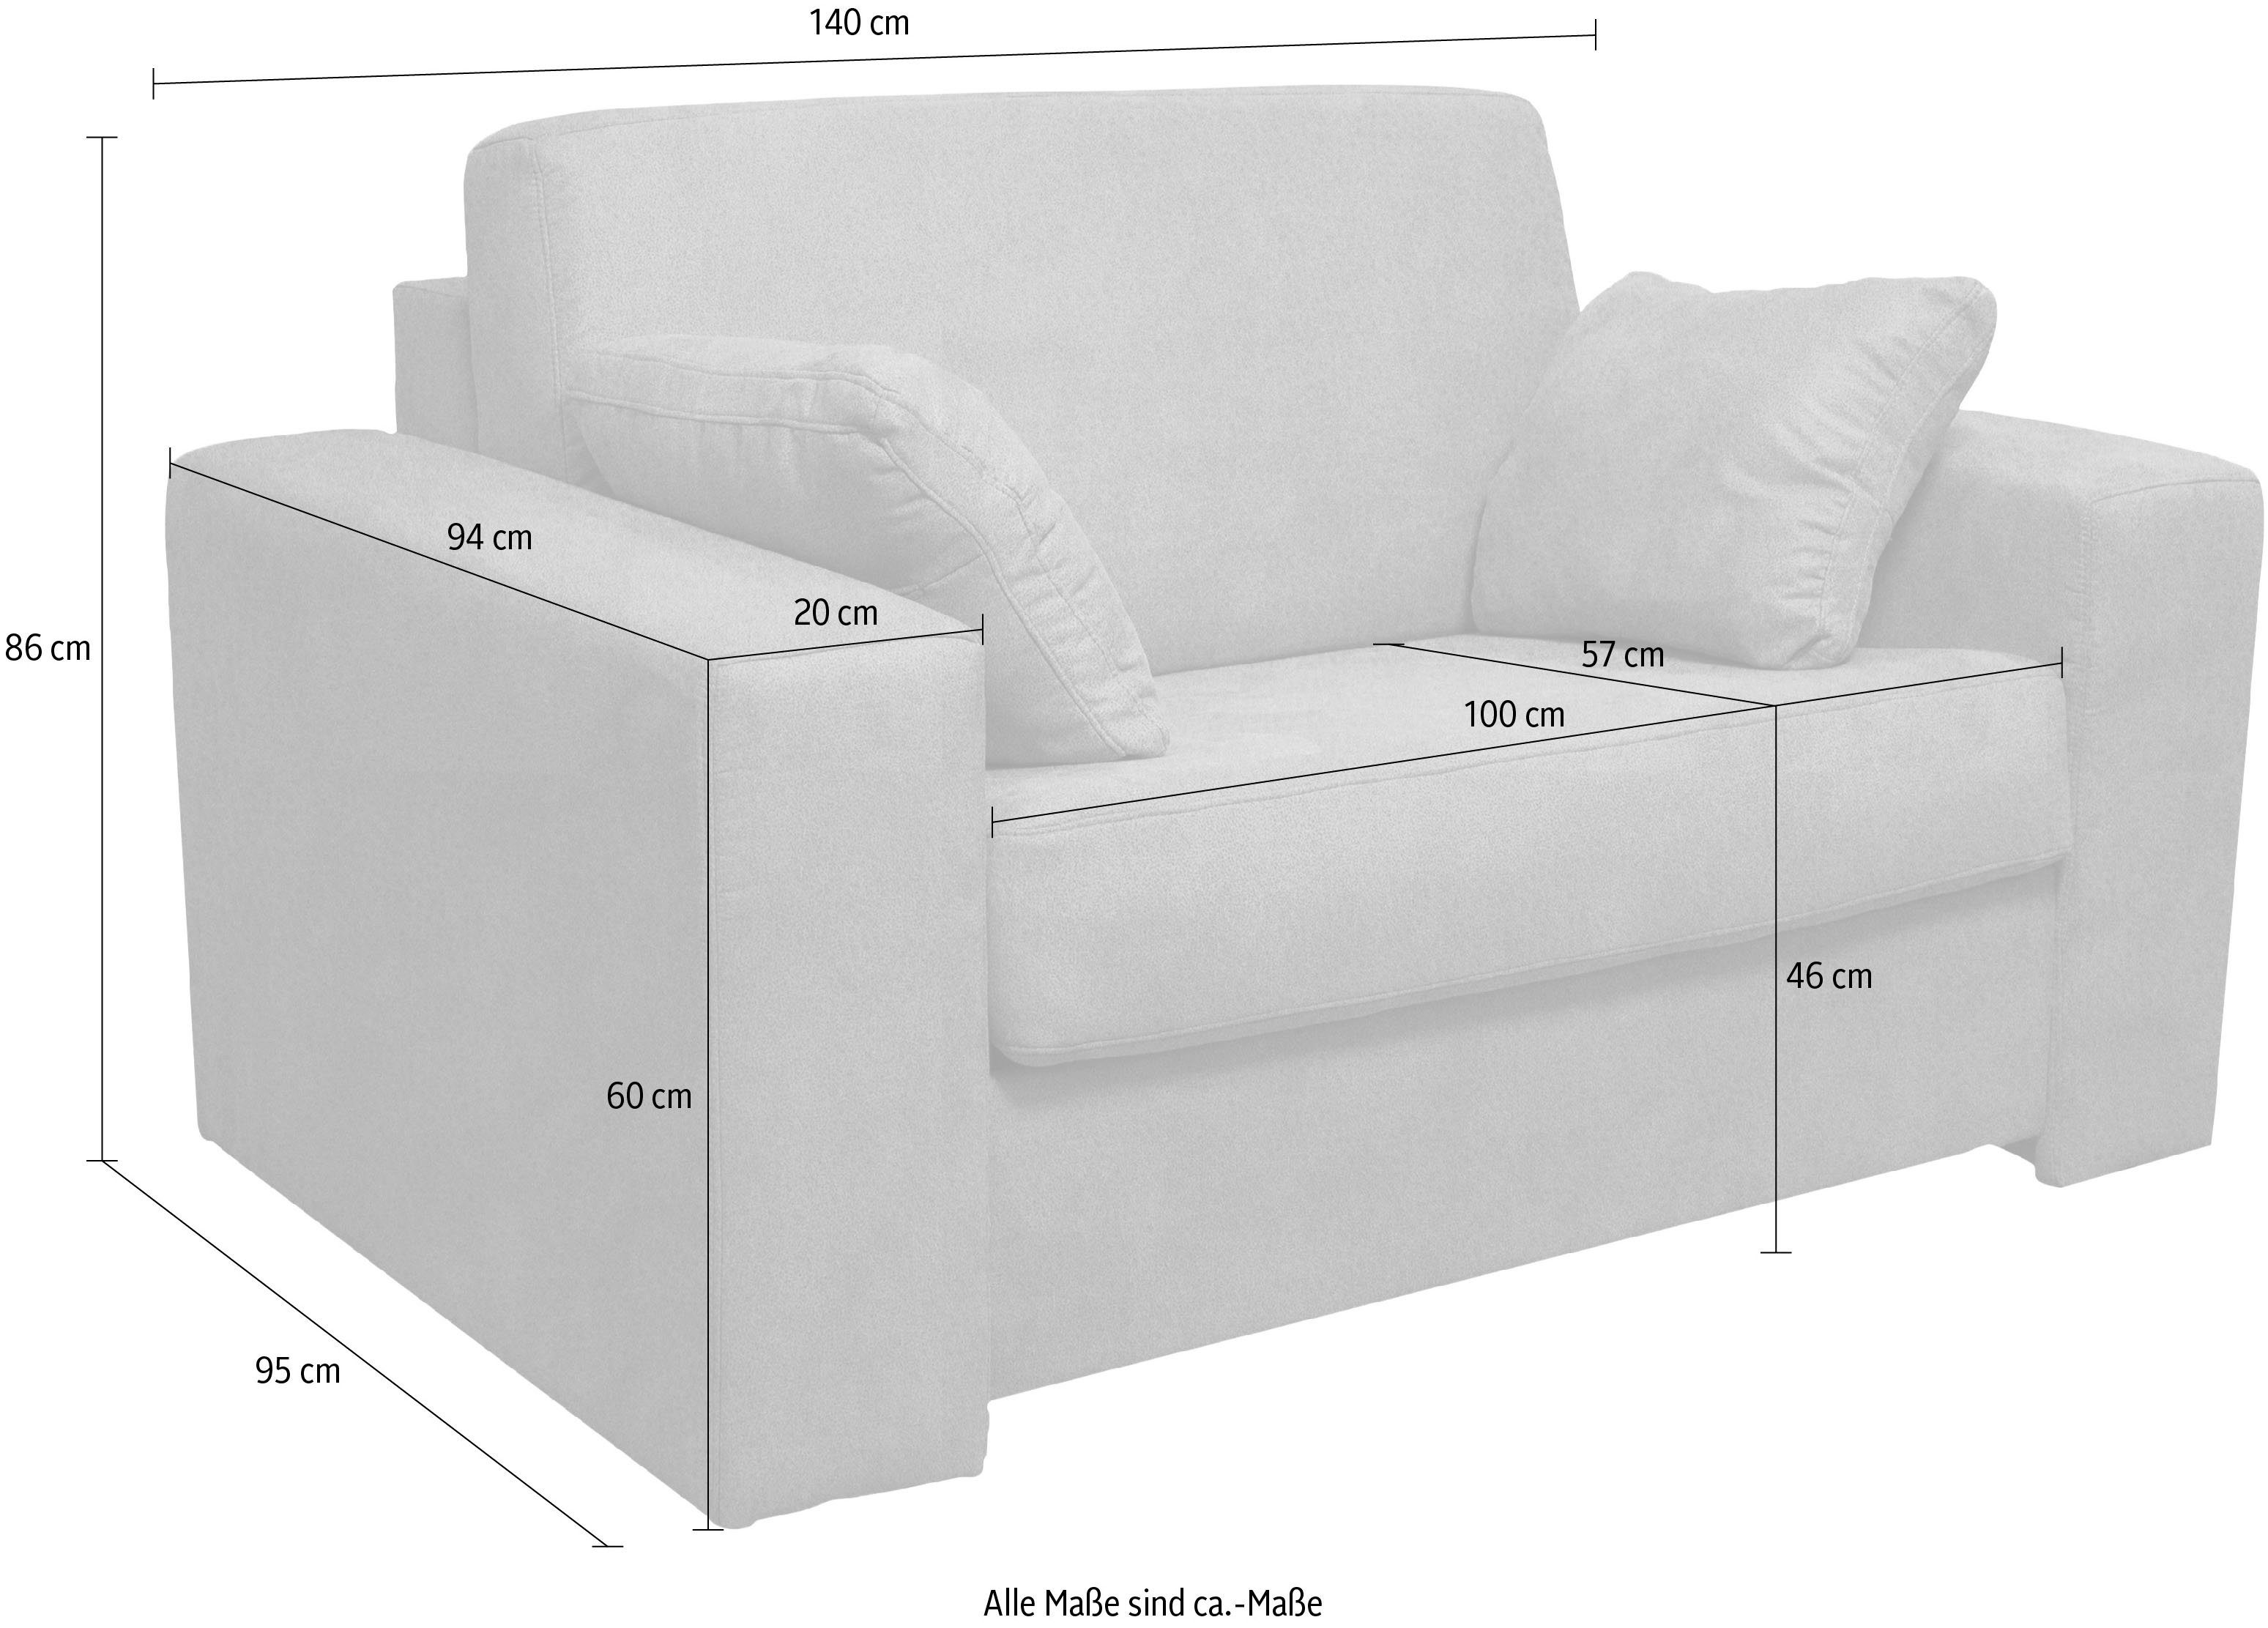 Home affaire Sessel Liegemaße mit Dauerschlaffunktion, ca 83x198 cm Roma, Unterfederung